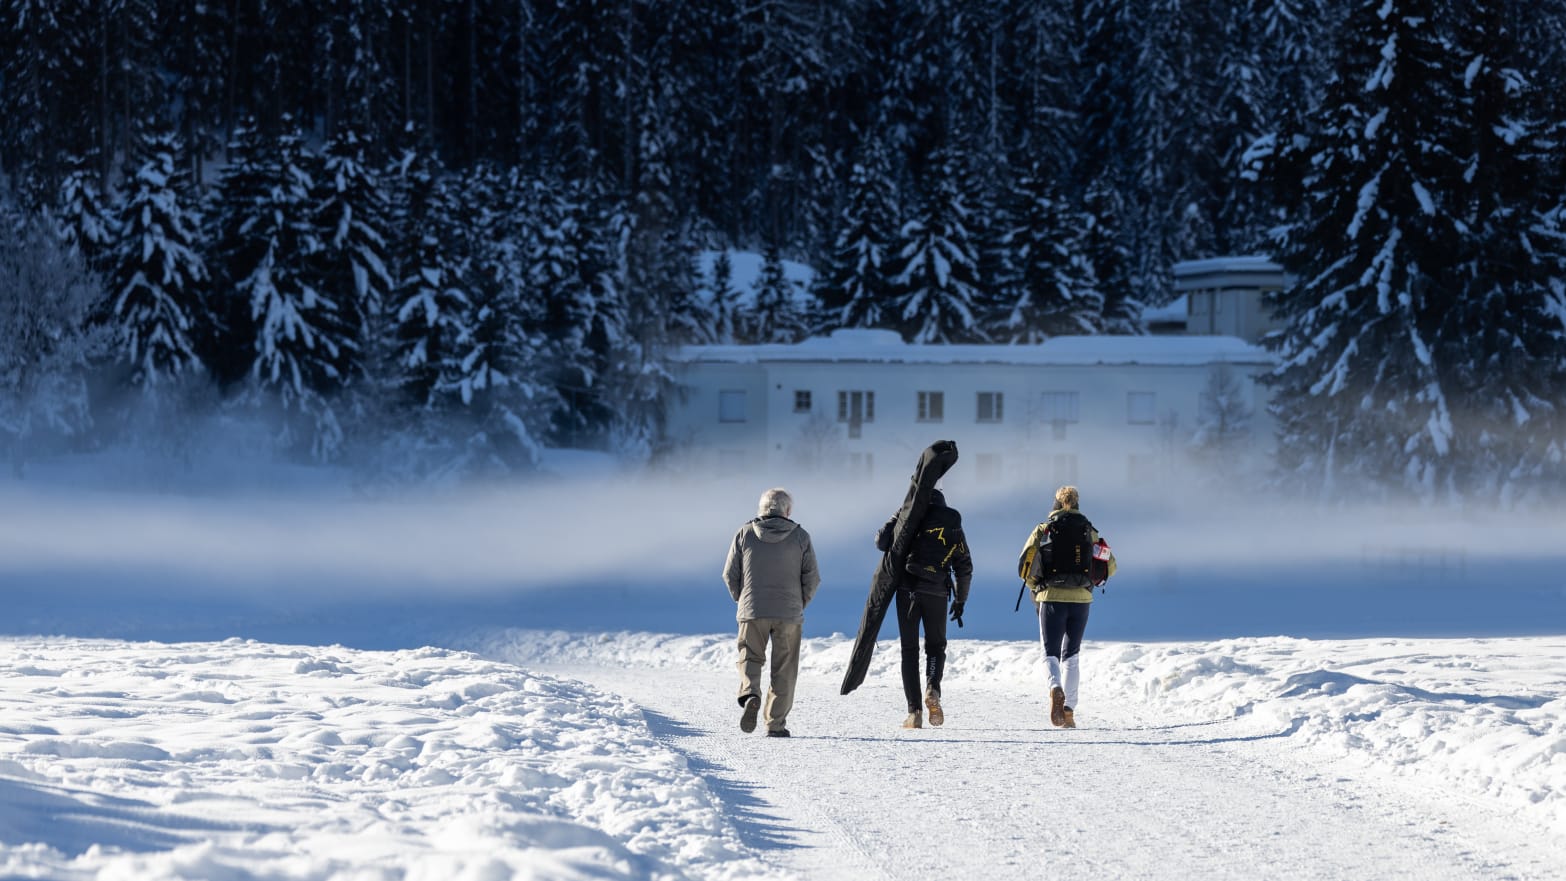 Switzerland, Davos: People walking along a ski slope.